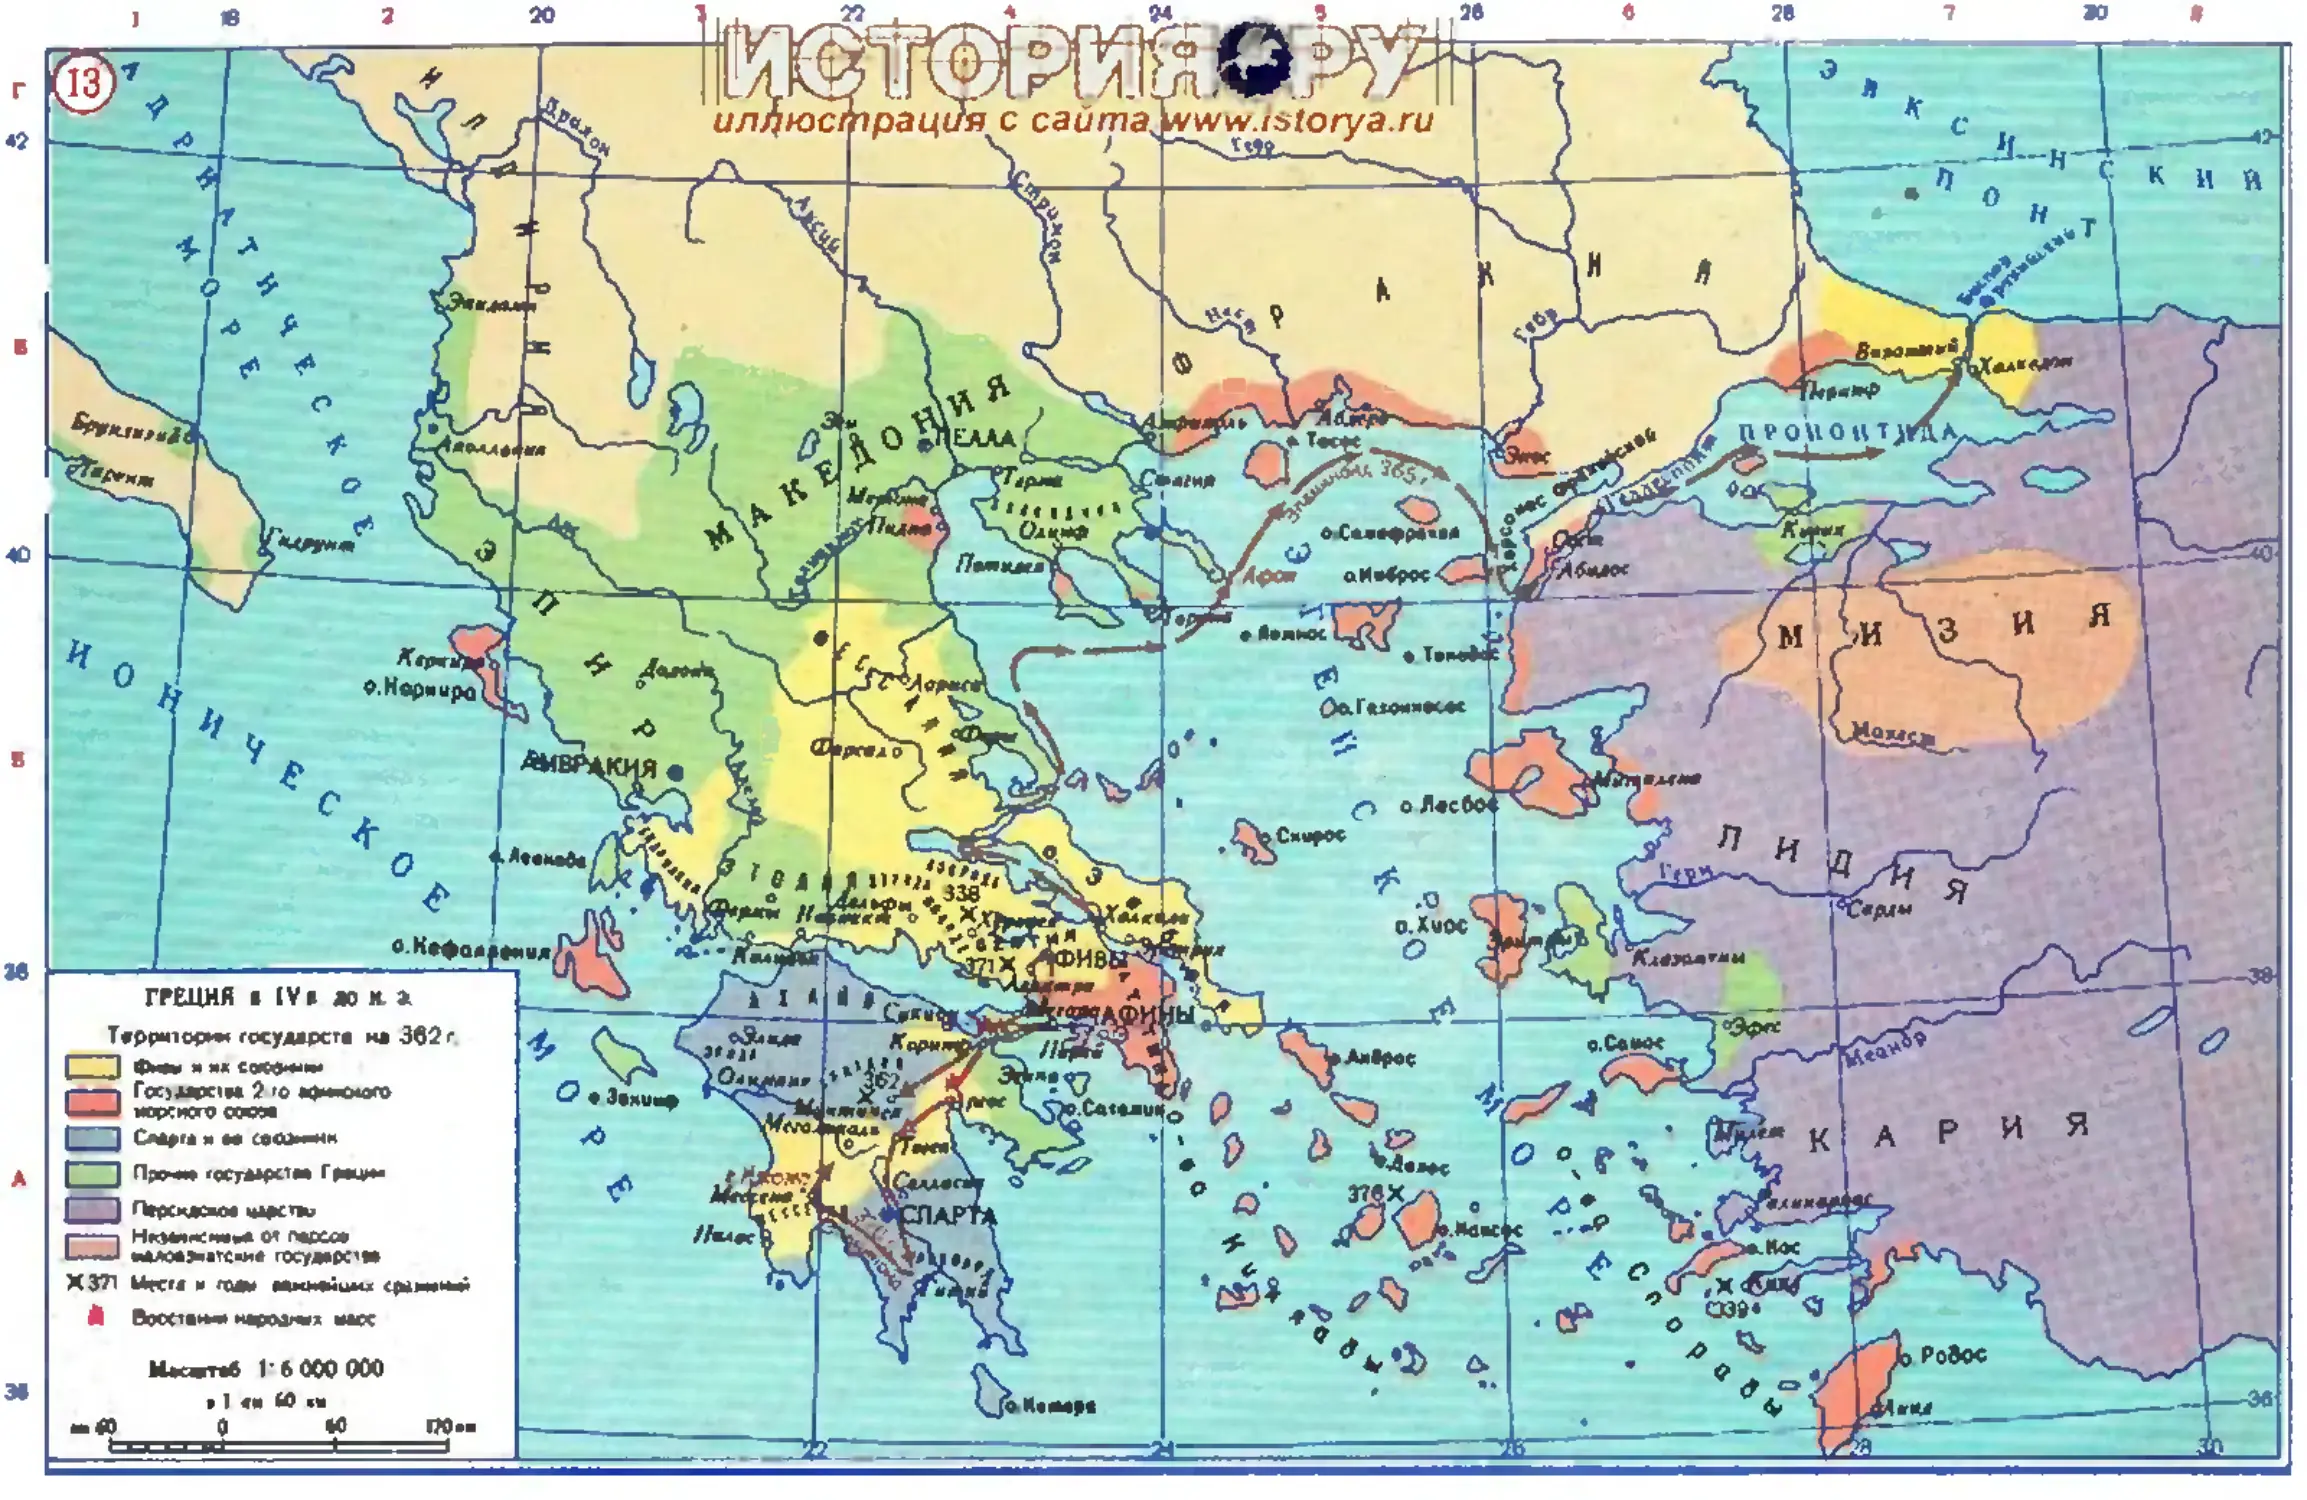 территории древней греции